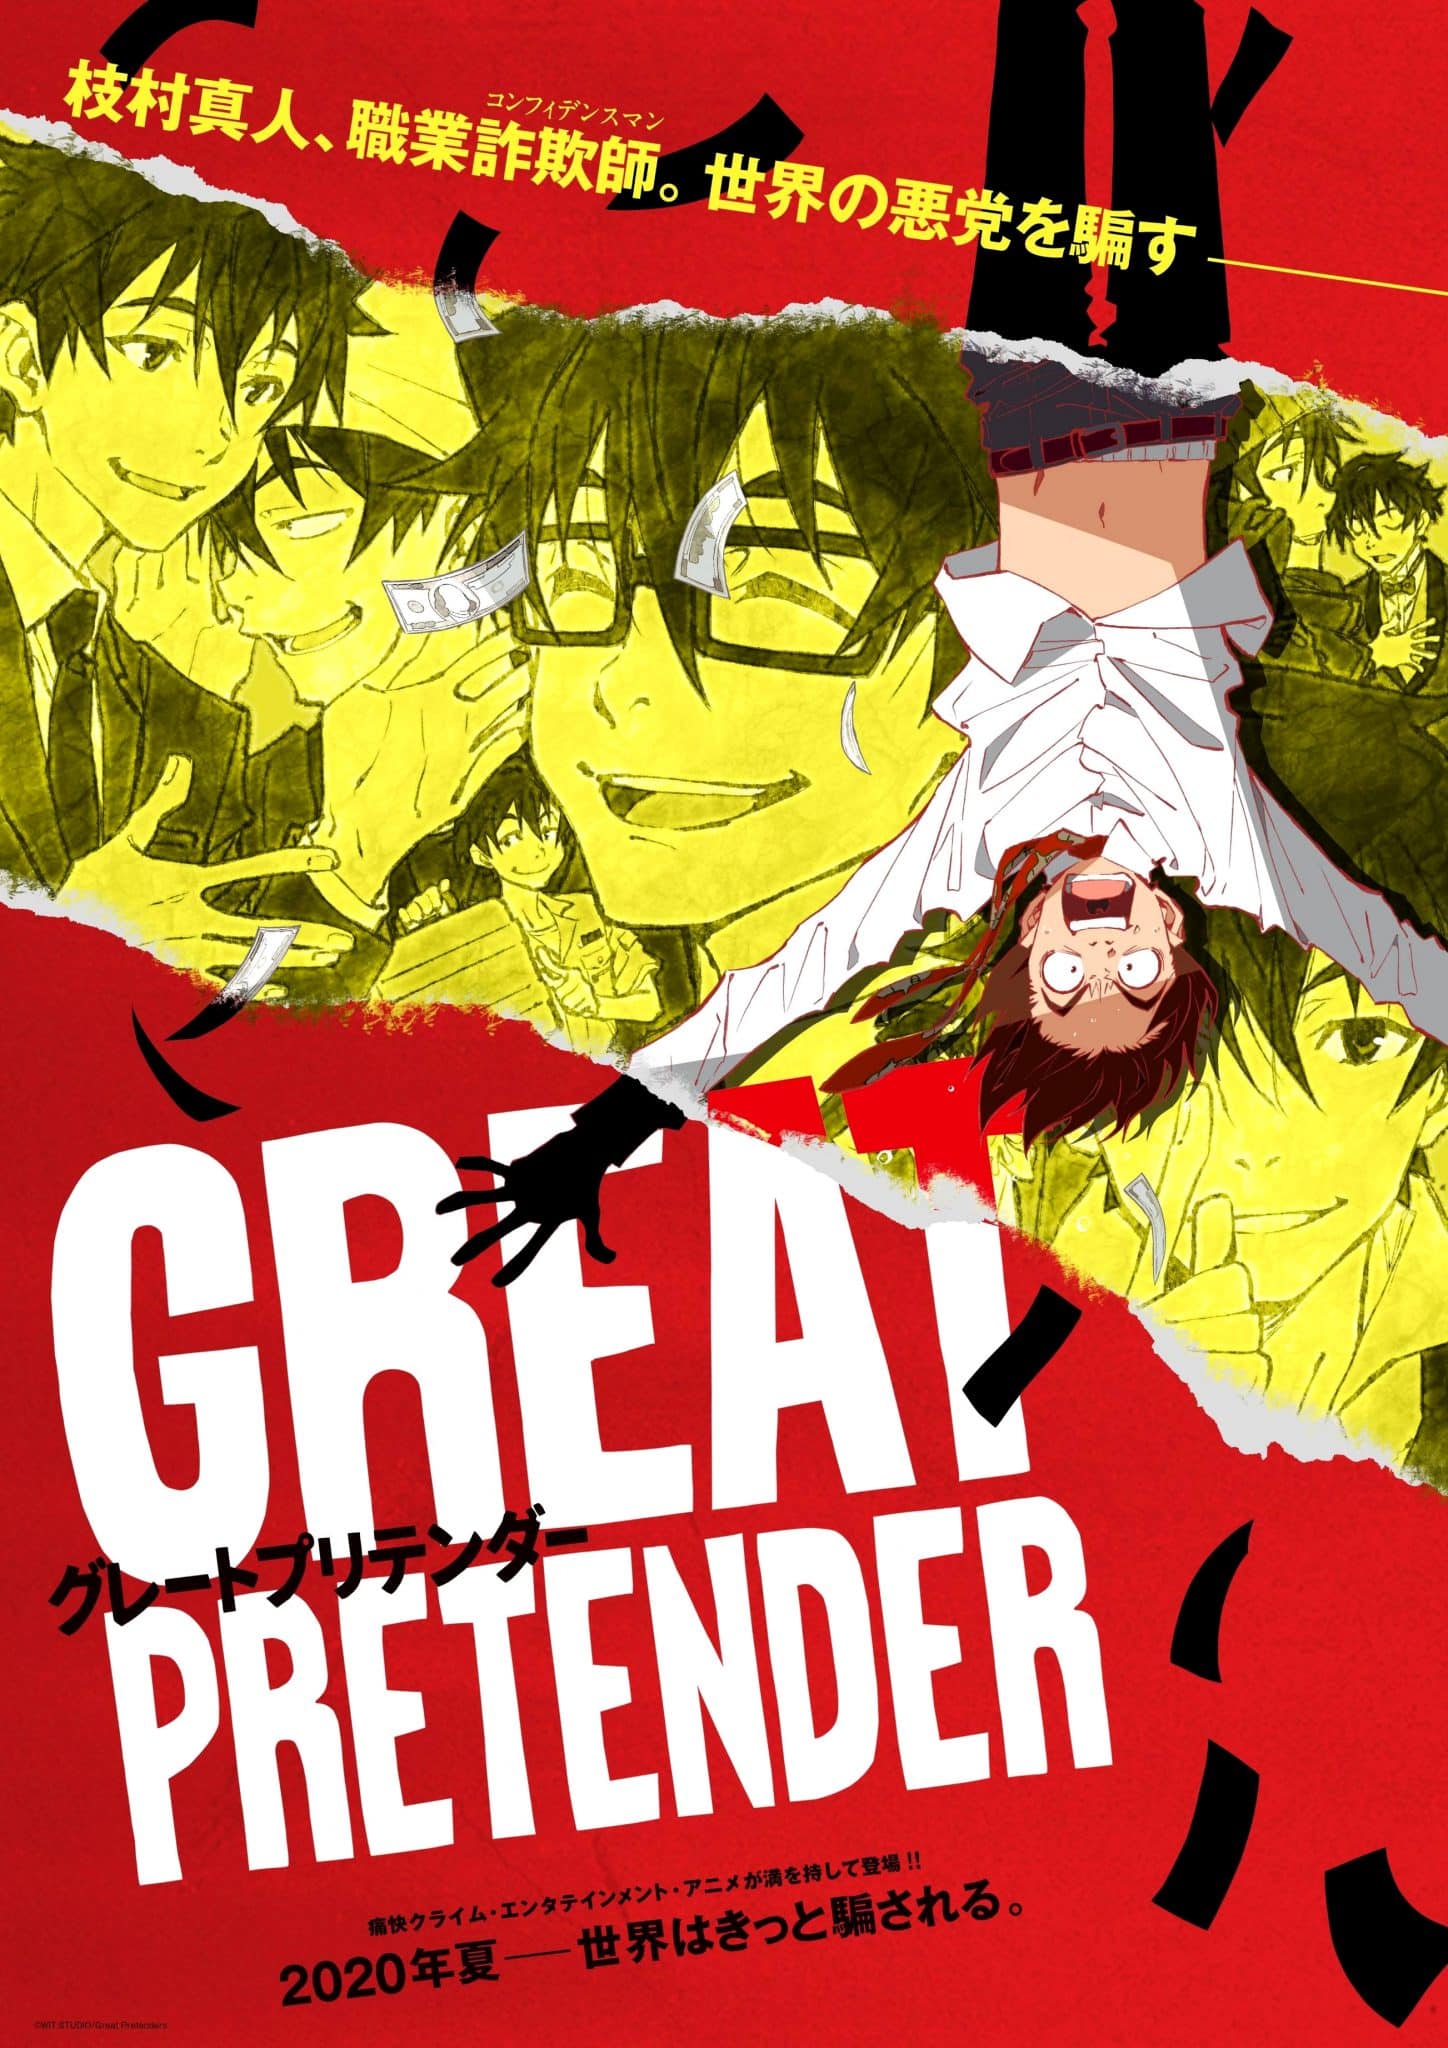 Annonce d'un nouveau trailer pour l'anime Netflix Great Pretender